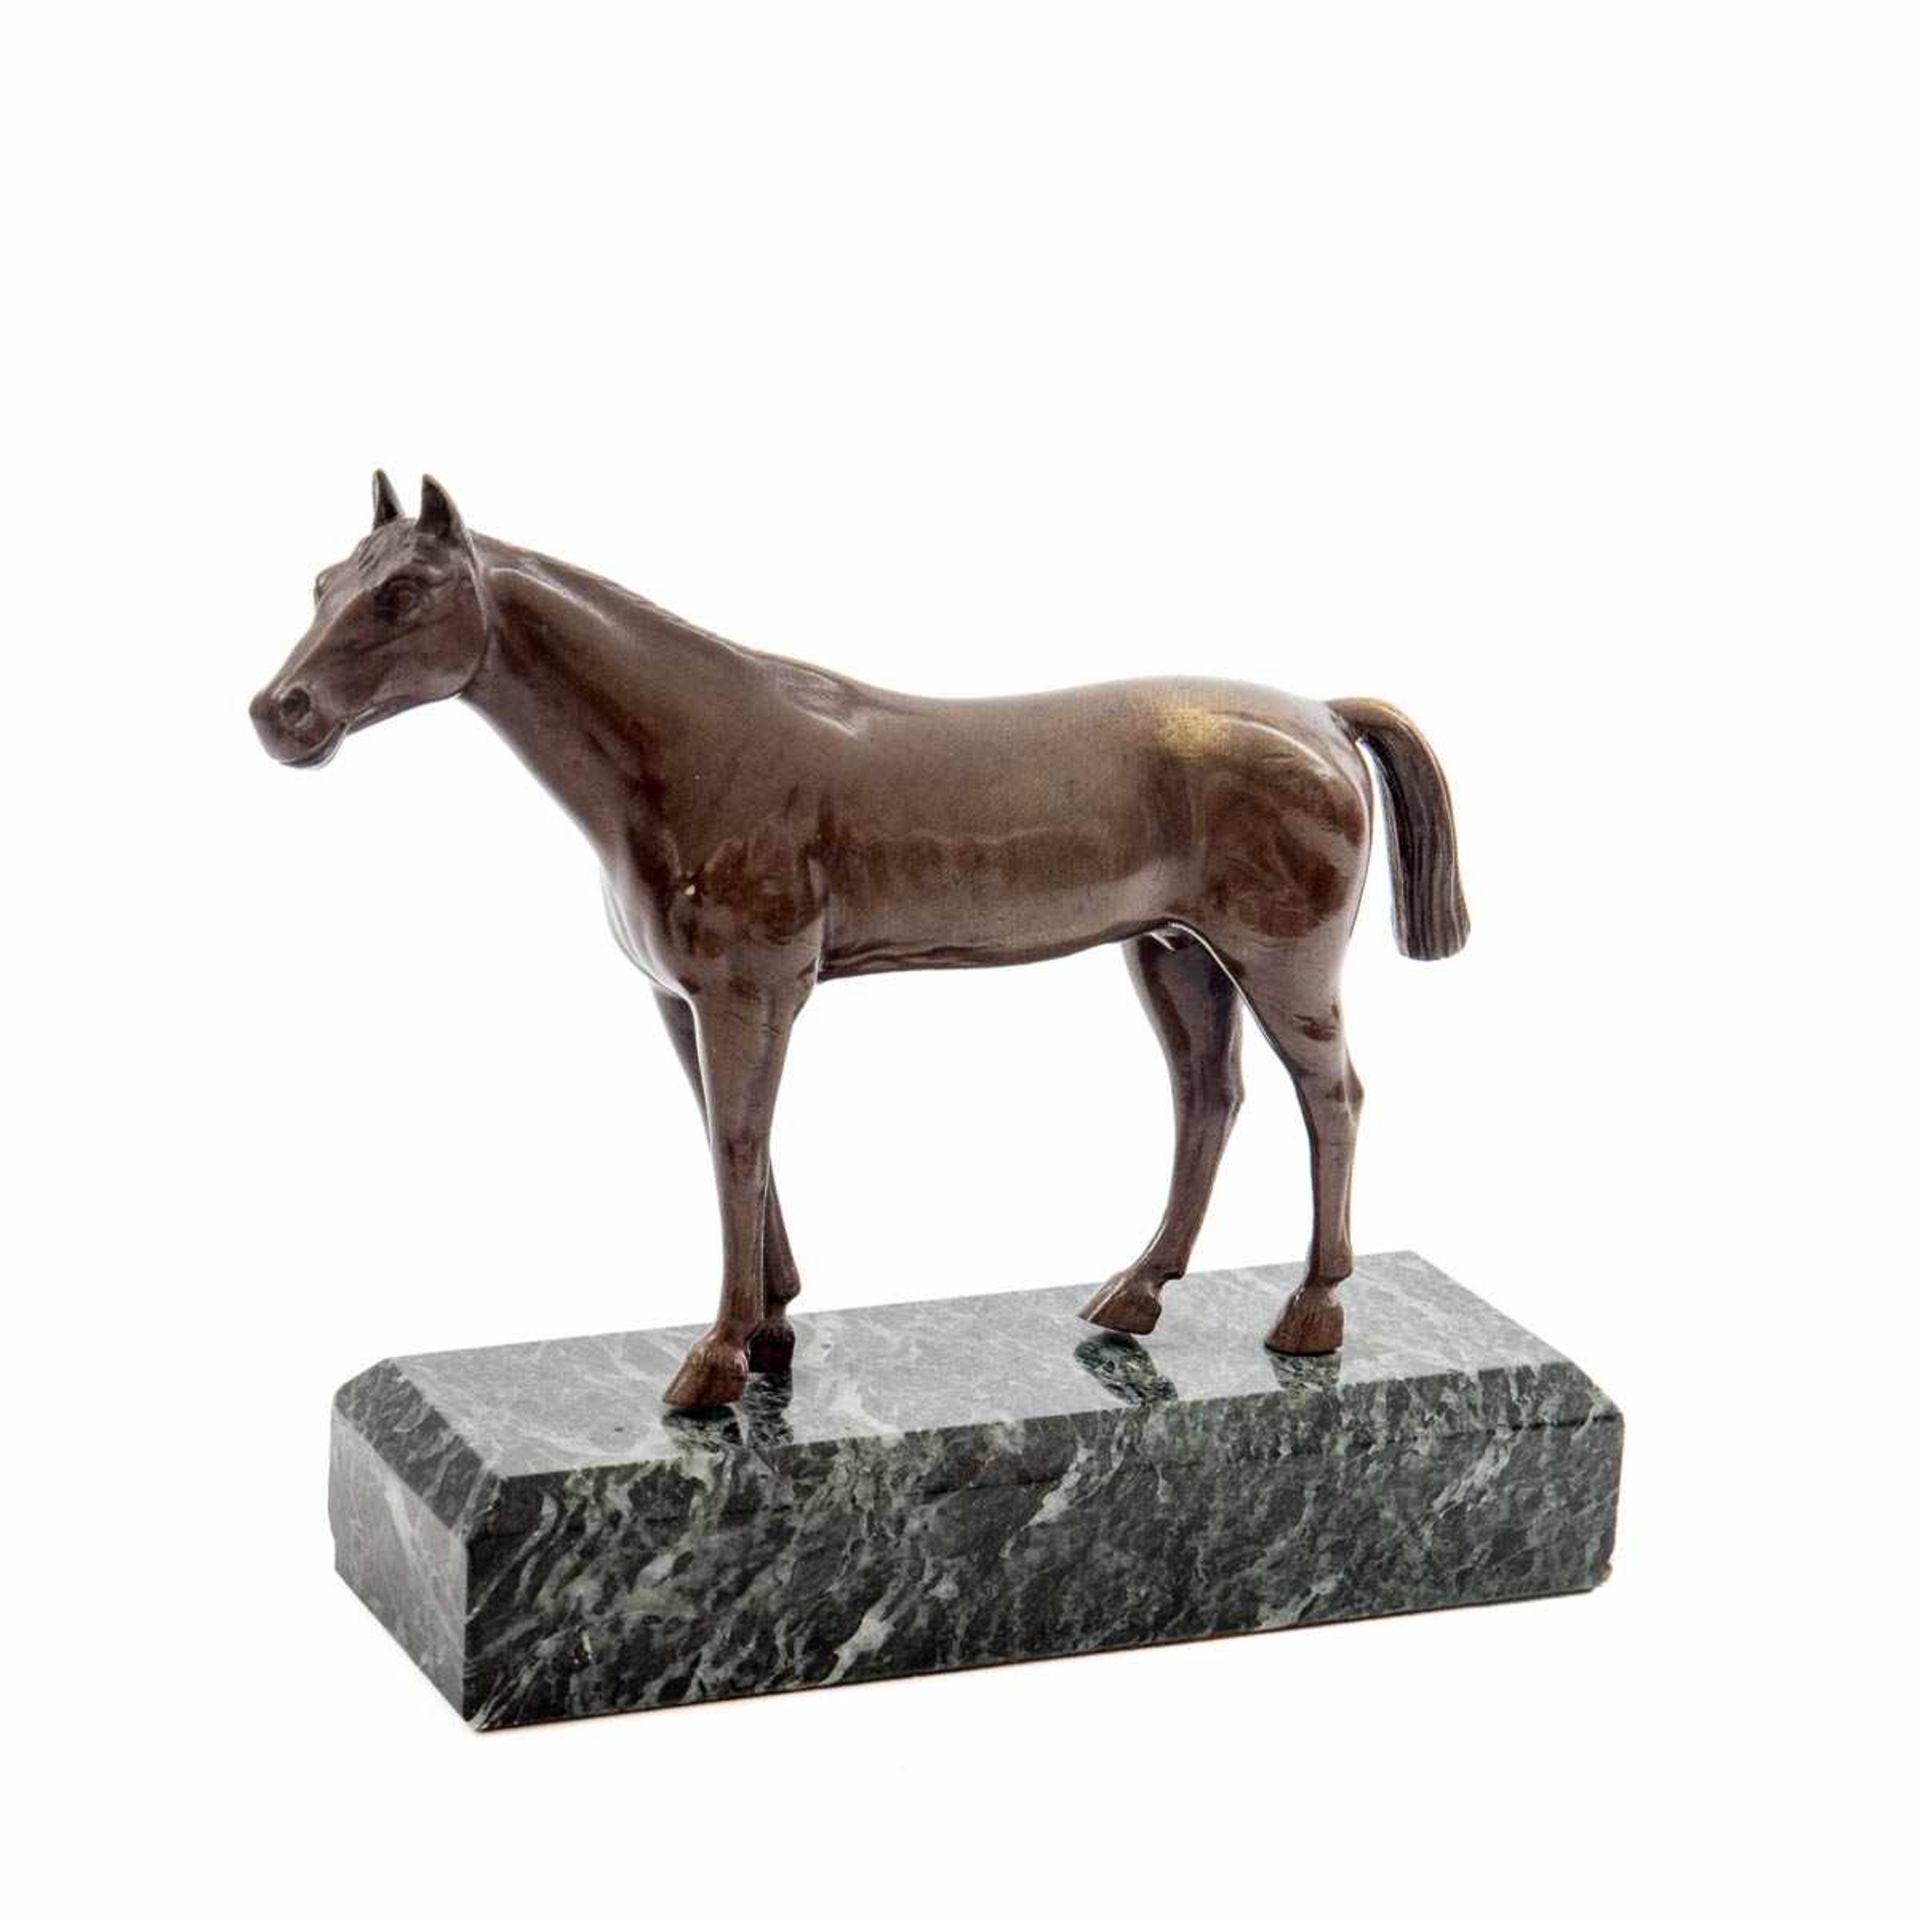 Tierbildner Pferdeskulptur. Bronze hellbraun patiniert, auf grünlich-grauem Marmorsockel. H.: 14